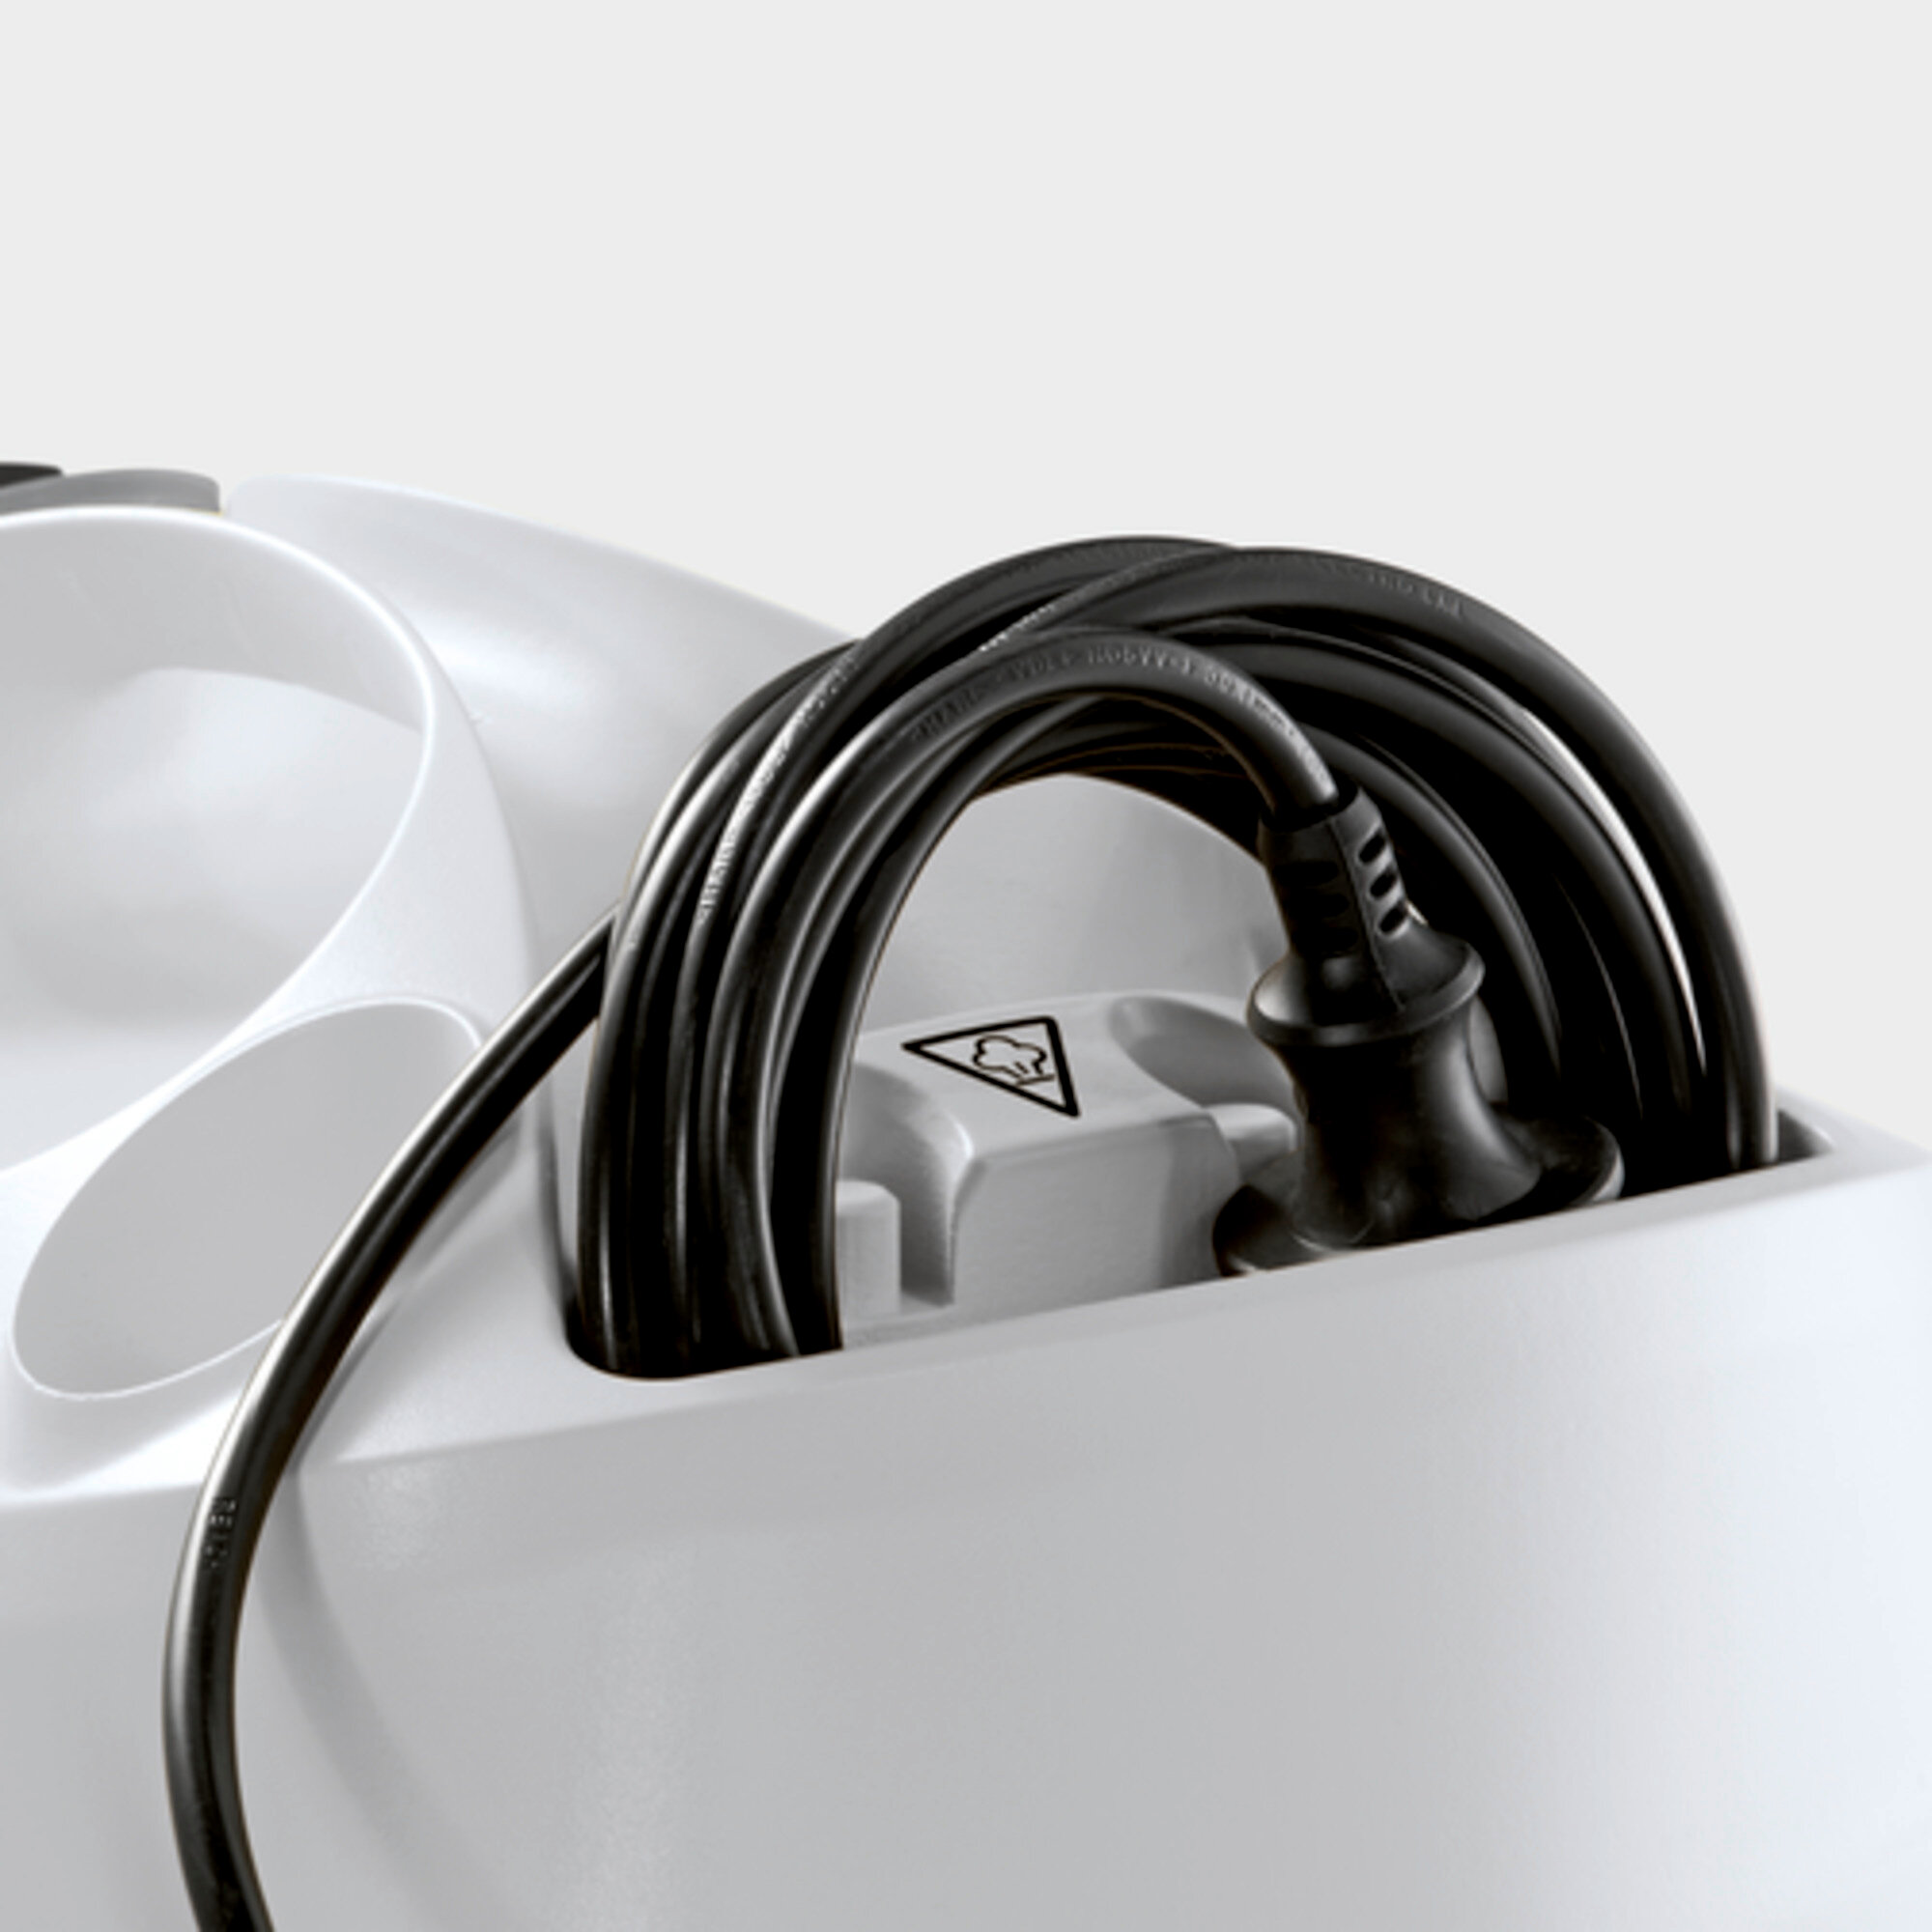 Пароочиститель SC 4 EasyFix Plus: есть встроенное место для хранения электрического шнура.